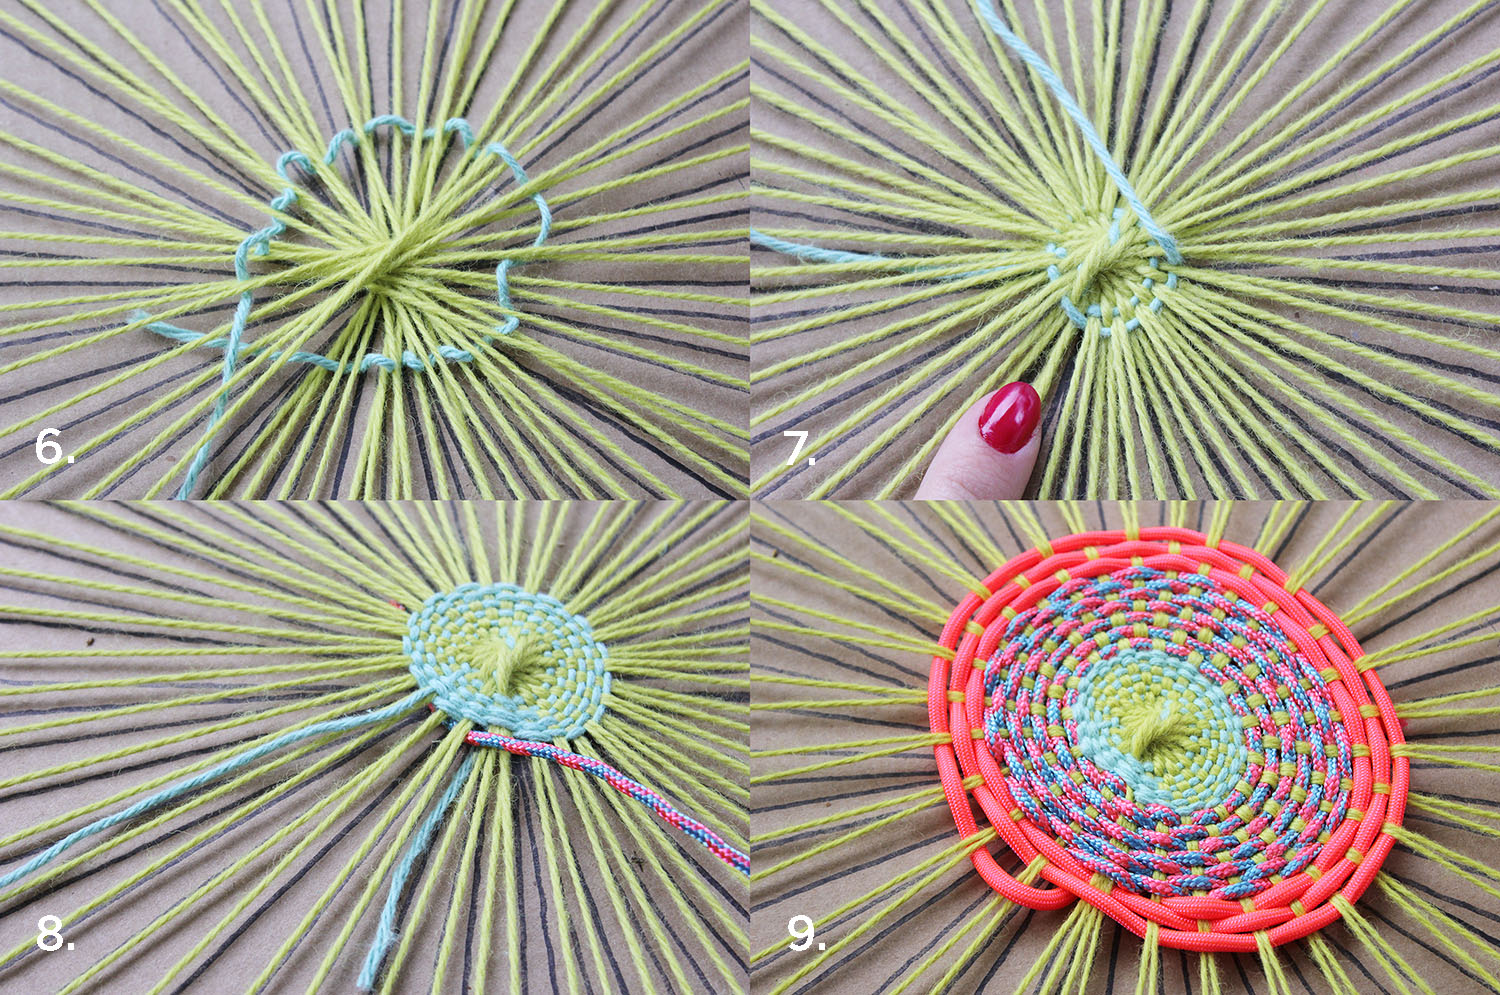 Поделки из ниток: схемы интересных моделей как сделать своими руками нитяные игрушки и украшения (70 фото)